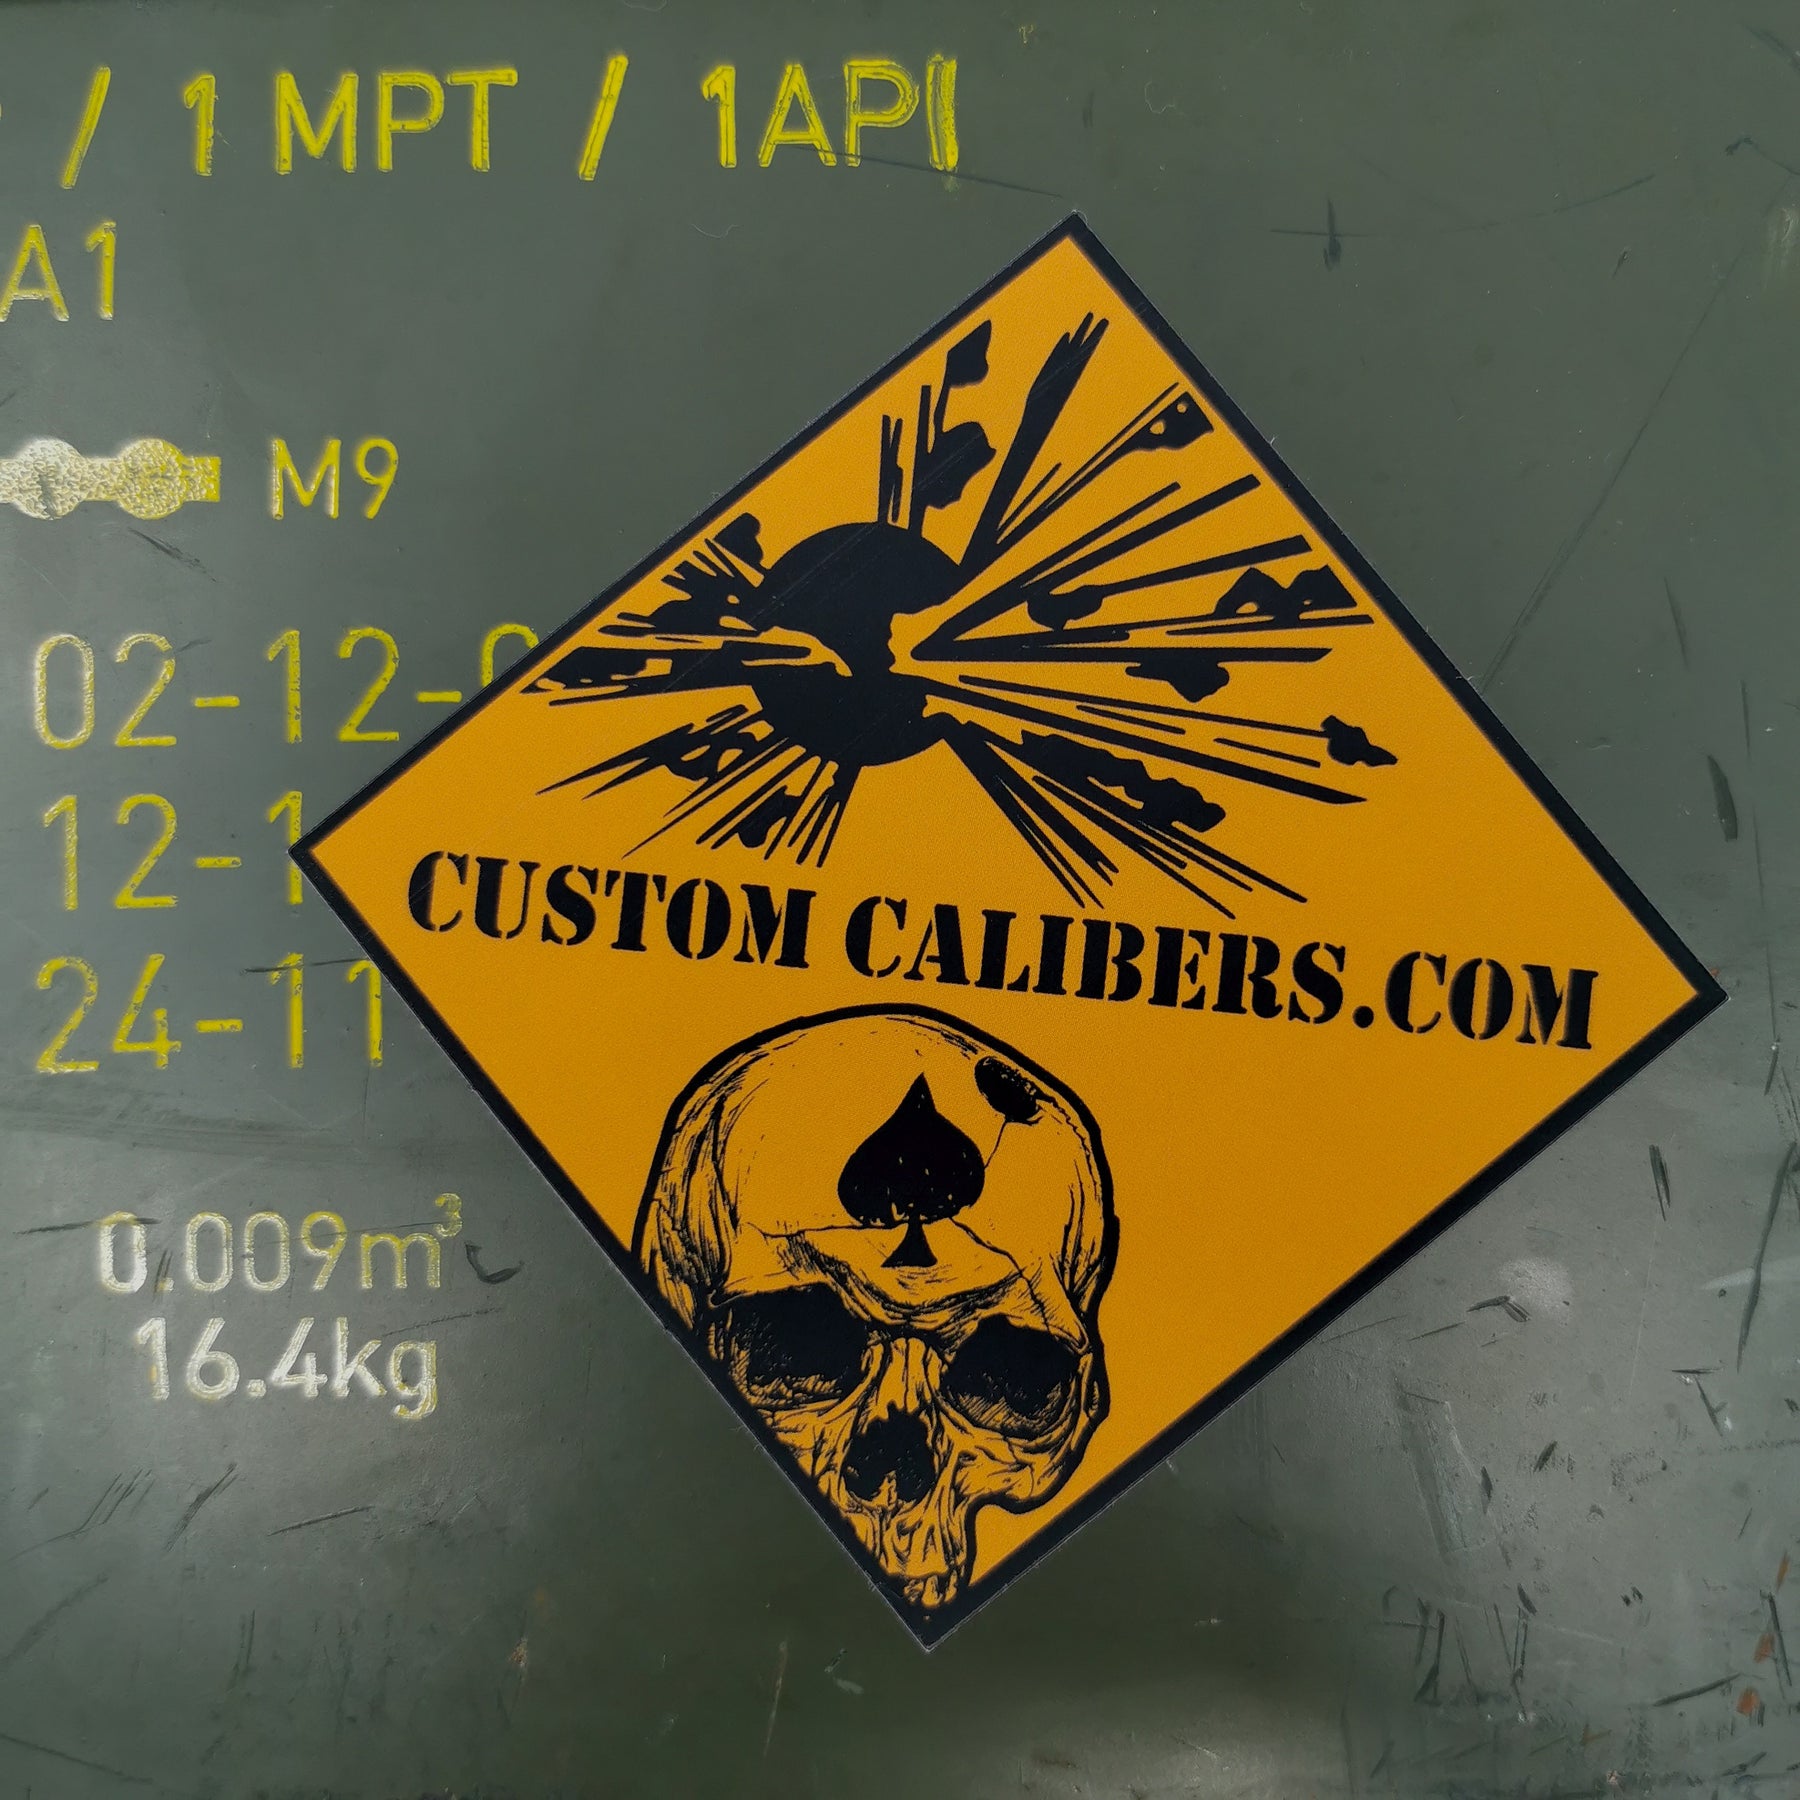 Explosive Hazard Warning sticker